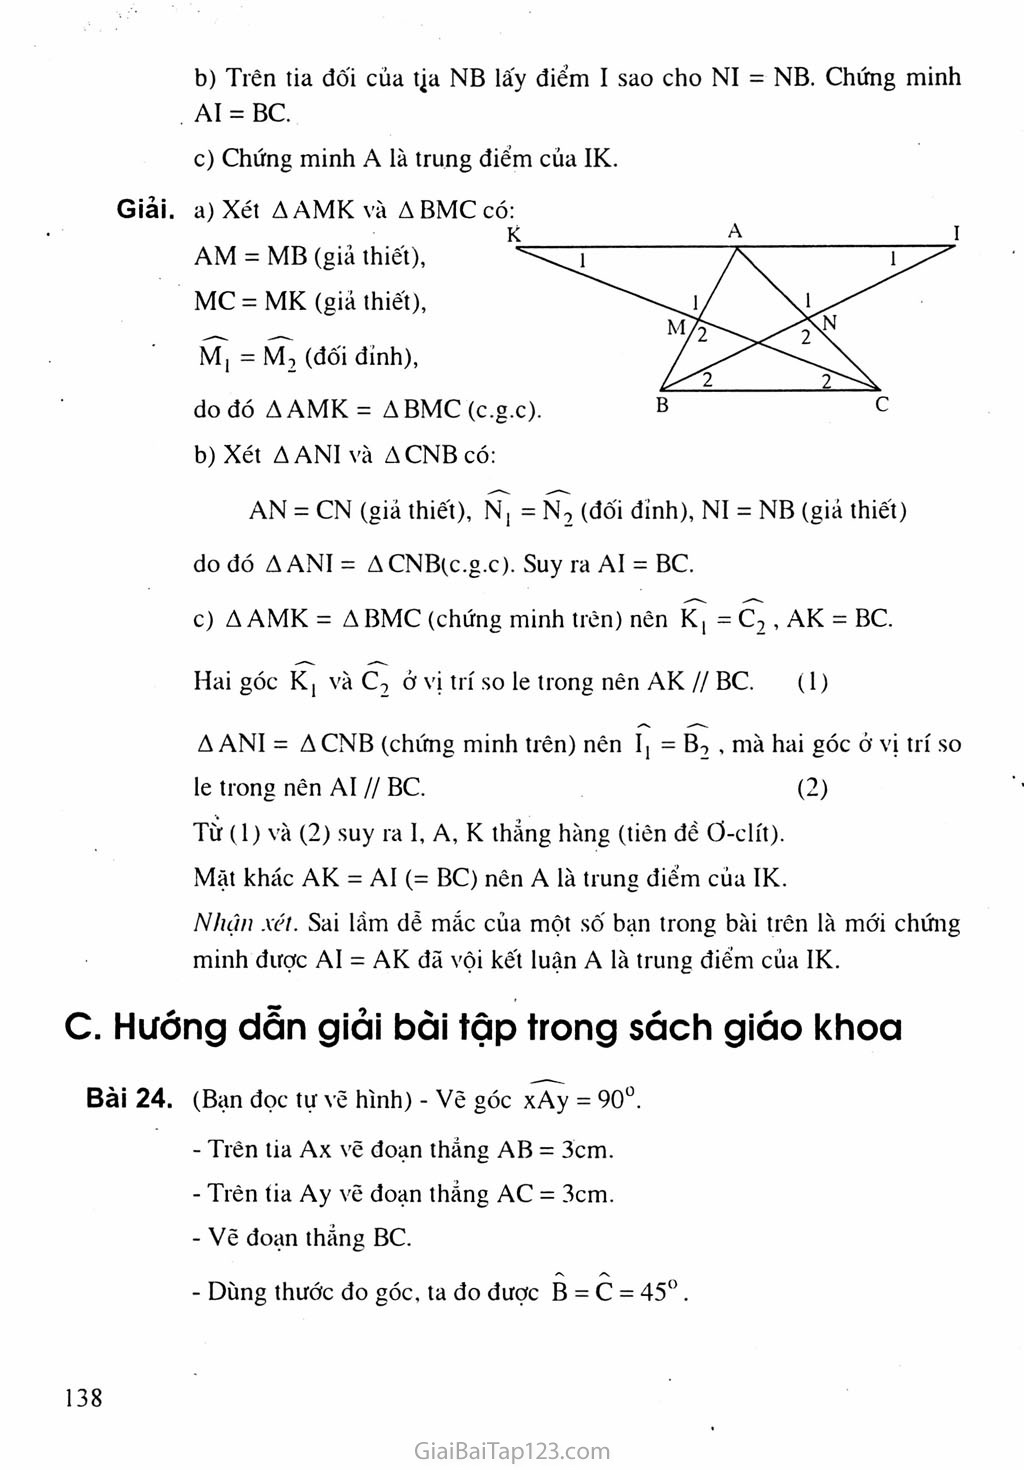 Bài 4. Trường hợp bằng nhau thứ hai của tam giác: cạnh - góc - cạnh (c.g.c) trang 2